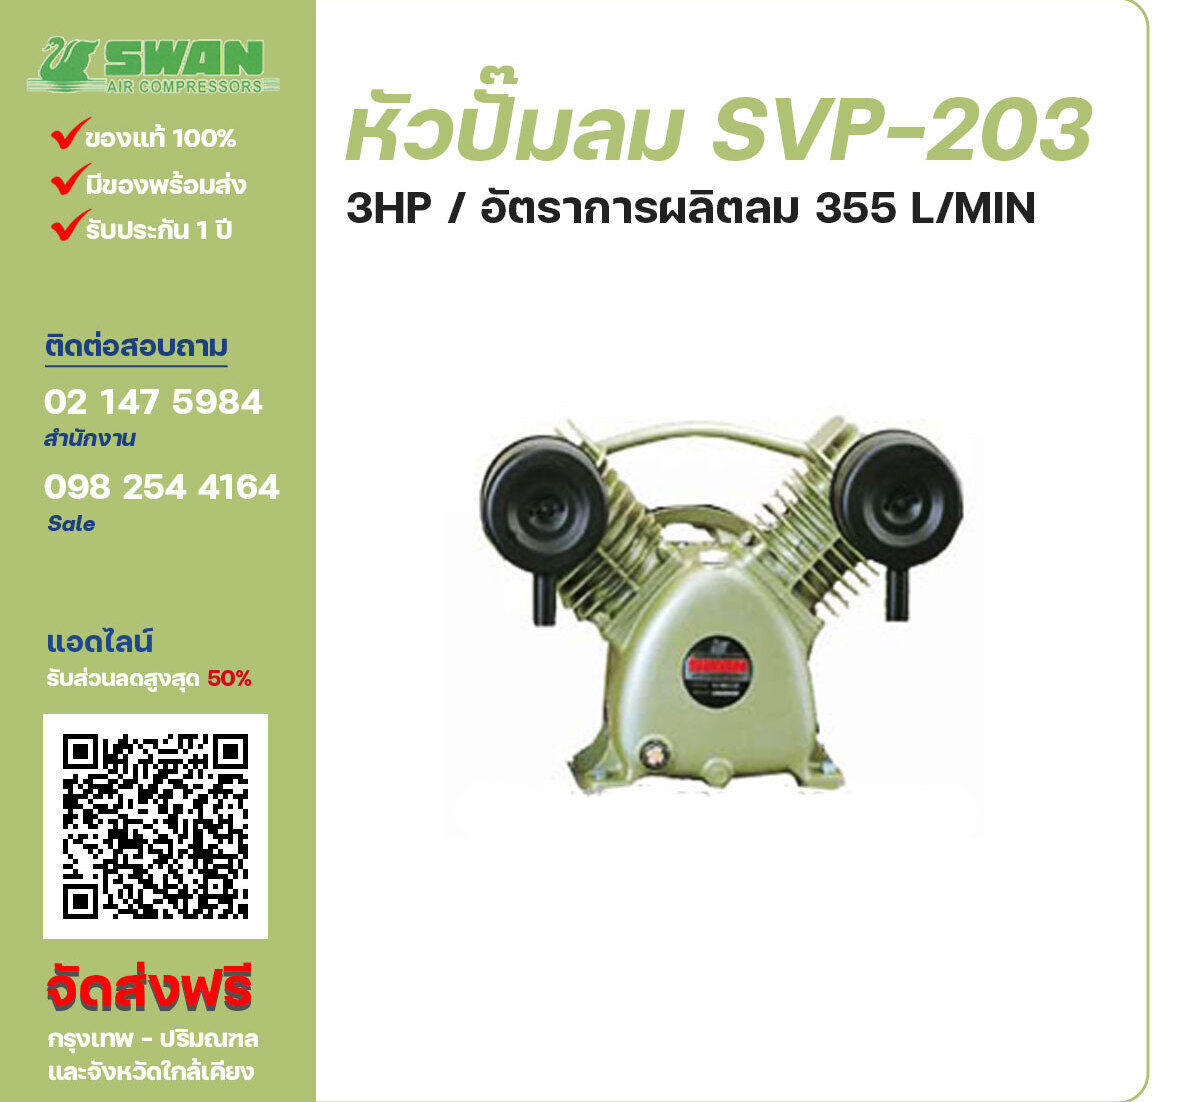 จำหน่ายหัวปั๊มลมสวอน ของแท้ 100% SWAN Bare Compressor รุ่น  SVP-203 ขนาด 3 แรงม้า อัตราการผลิตลม 355 ลิตร / นาที รับประกัน 3 เดือน ตามเงื่อนไขของบริษัทฯ
จัดส่งฟรี กรุงเทพ-ปริมณฑล